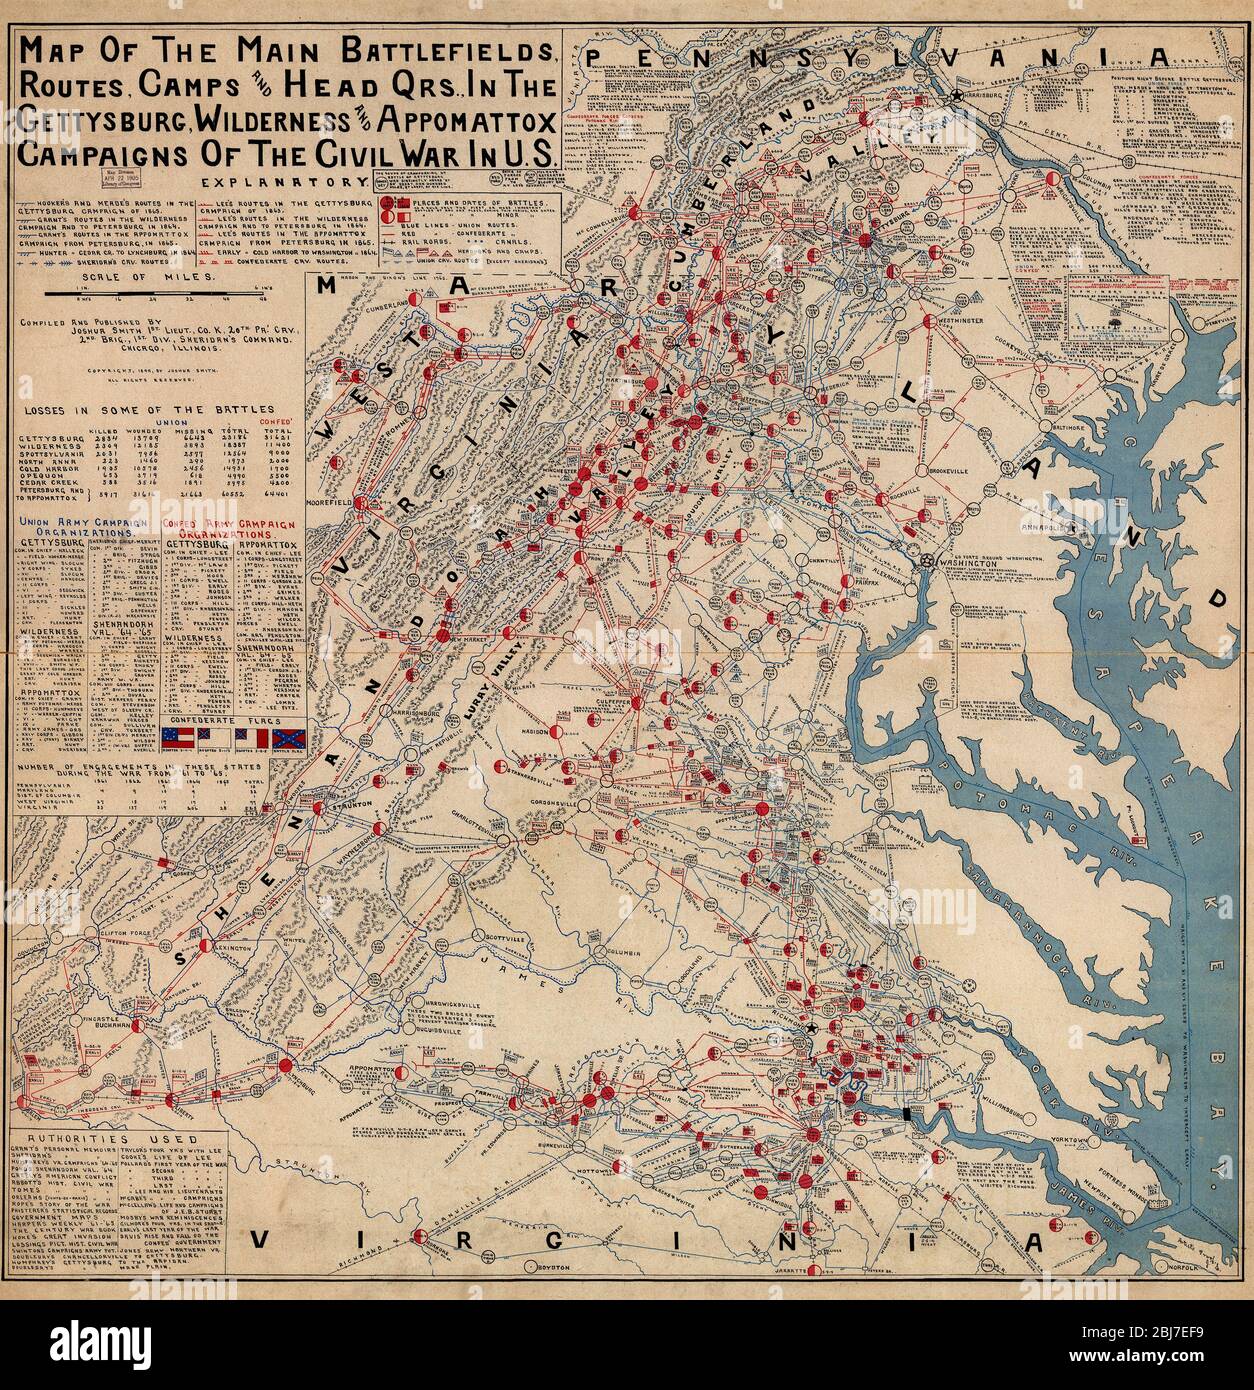 Karte der wichtigsten Schlachtfelder, Routen, Lager und Kopf qrs., in der Gettysburg, Wildnis und Appomattox Kampagnen des Bürgerkriegs in den USA Stockfoto